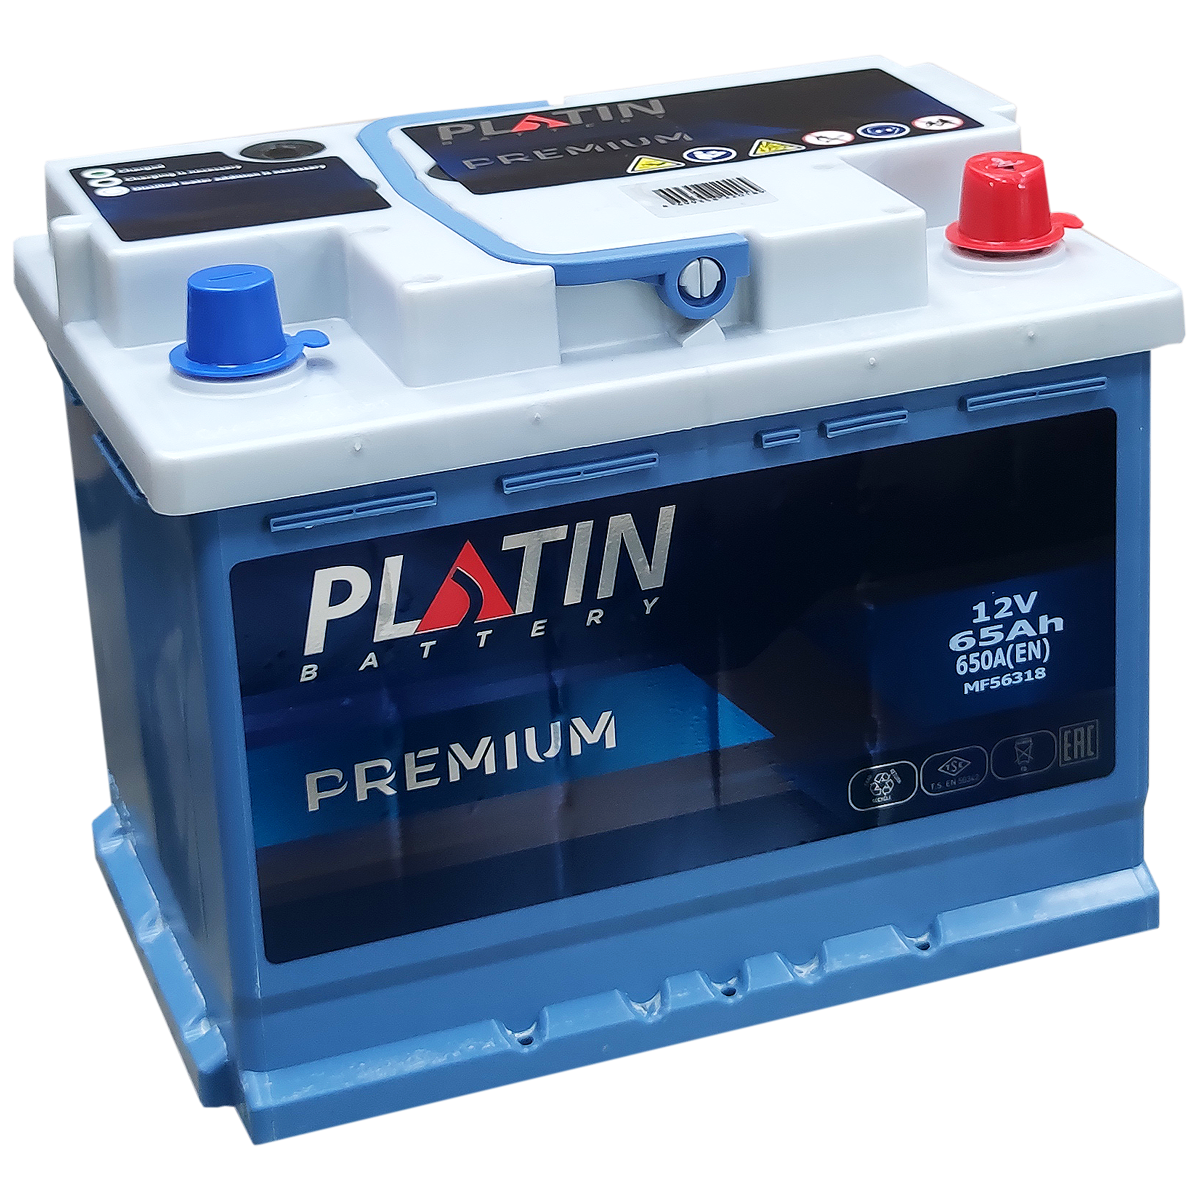 65 ампер час. Platin Premium 65 Ач. Аккумулятор Platin 65 Ah. Platin Premium 60 Ah аккумулятор. Аккумулятор 65 Ач Premium.